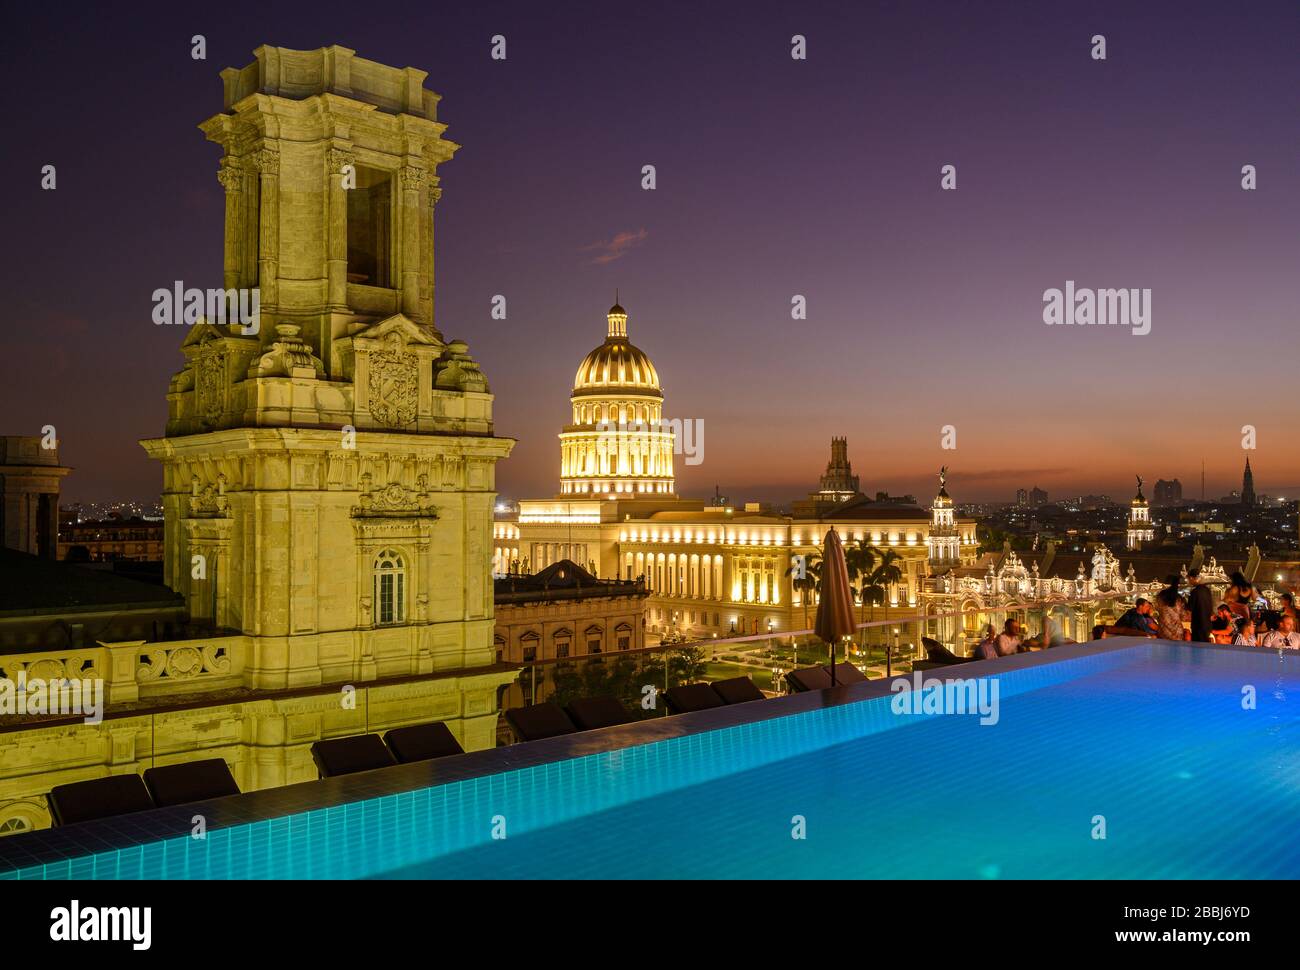 Vue sur le toit avec piscine à débordement d'El Capitolio, ou le Capitole national, et Museo Nacional de Bellas Artes, depuis le toit du Gran Hotel Manzana Kempinski, la Havane, Cuba Banque D'Images